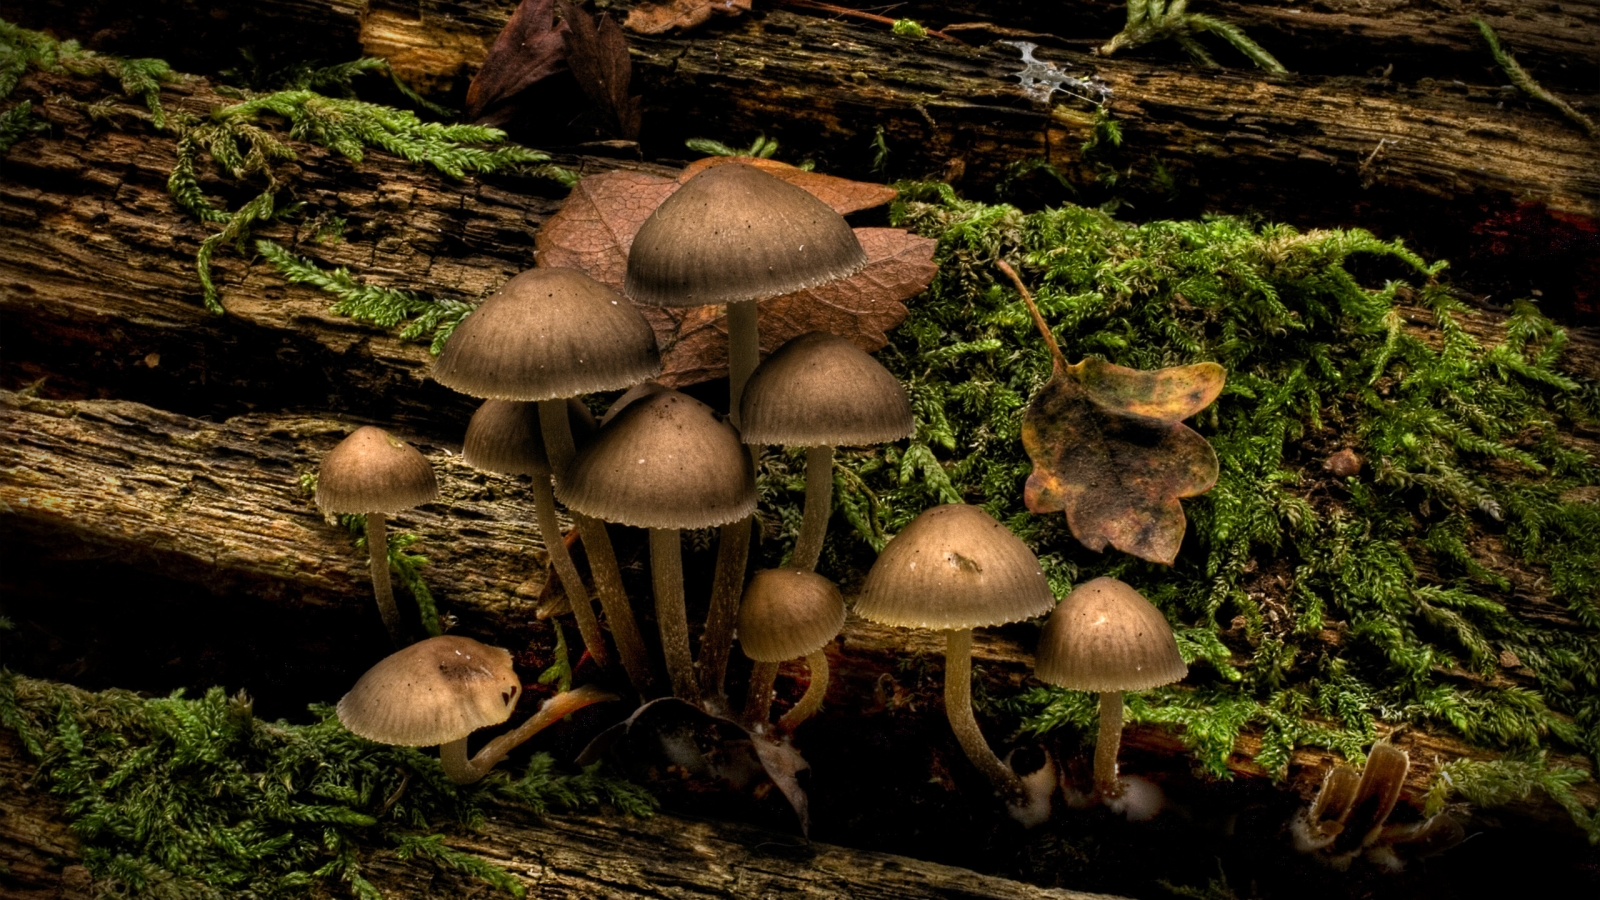 Mushrooms for 1600 x 900 HDTV resolution